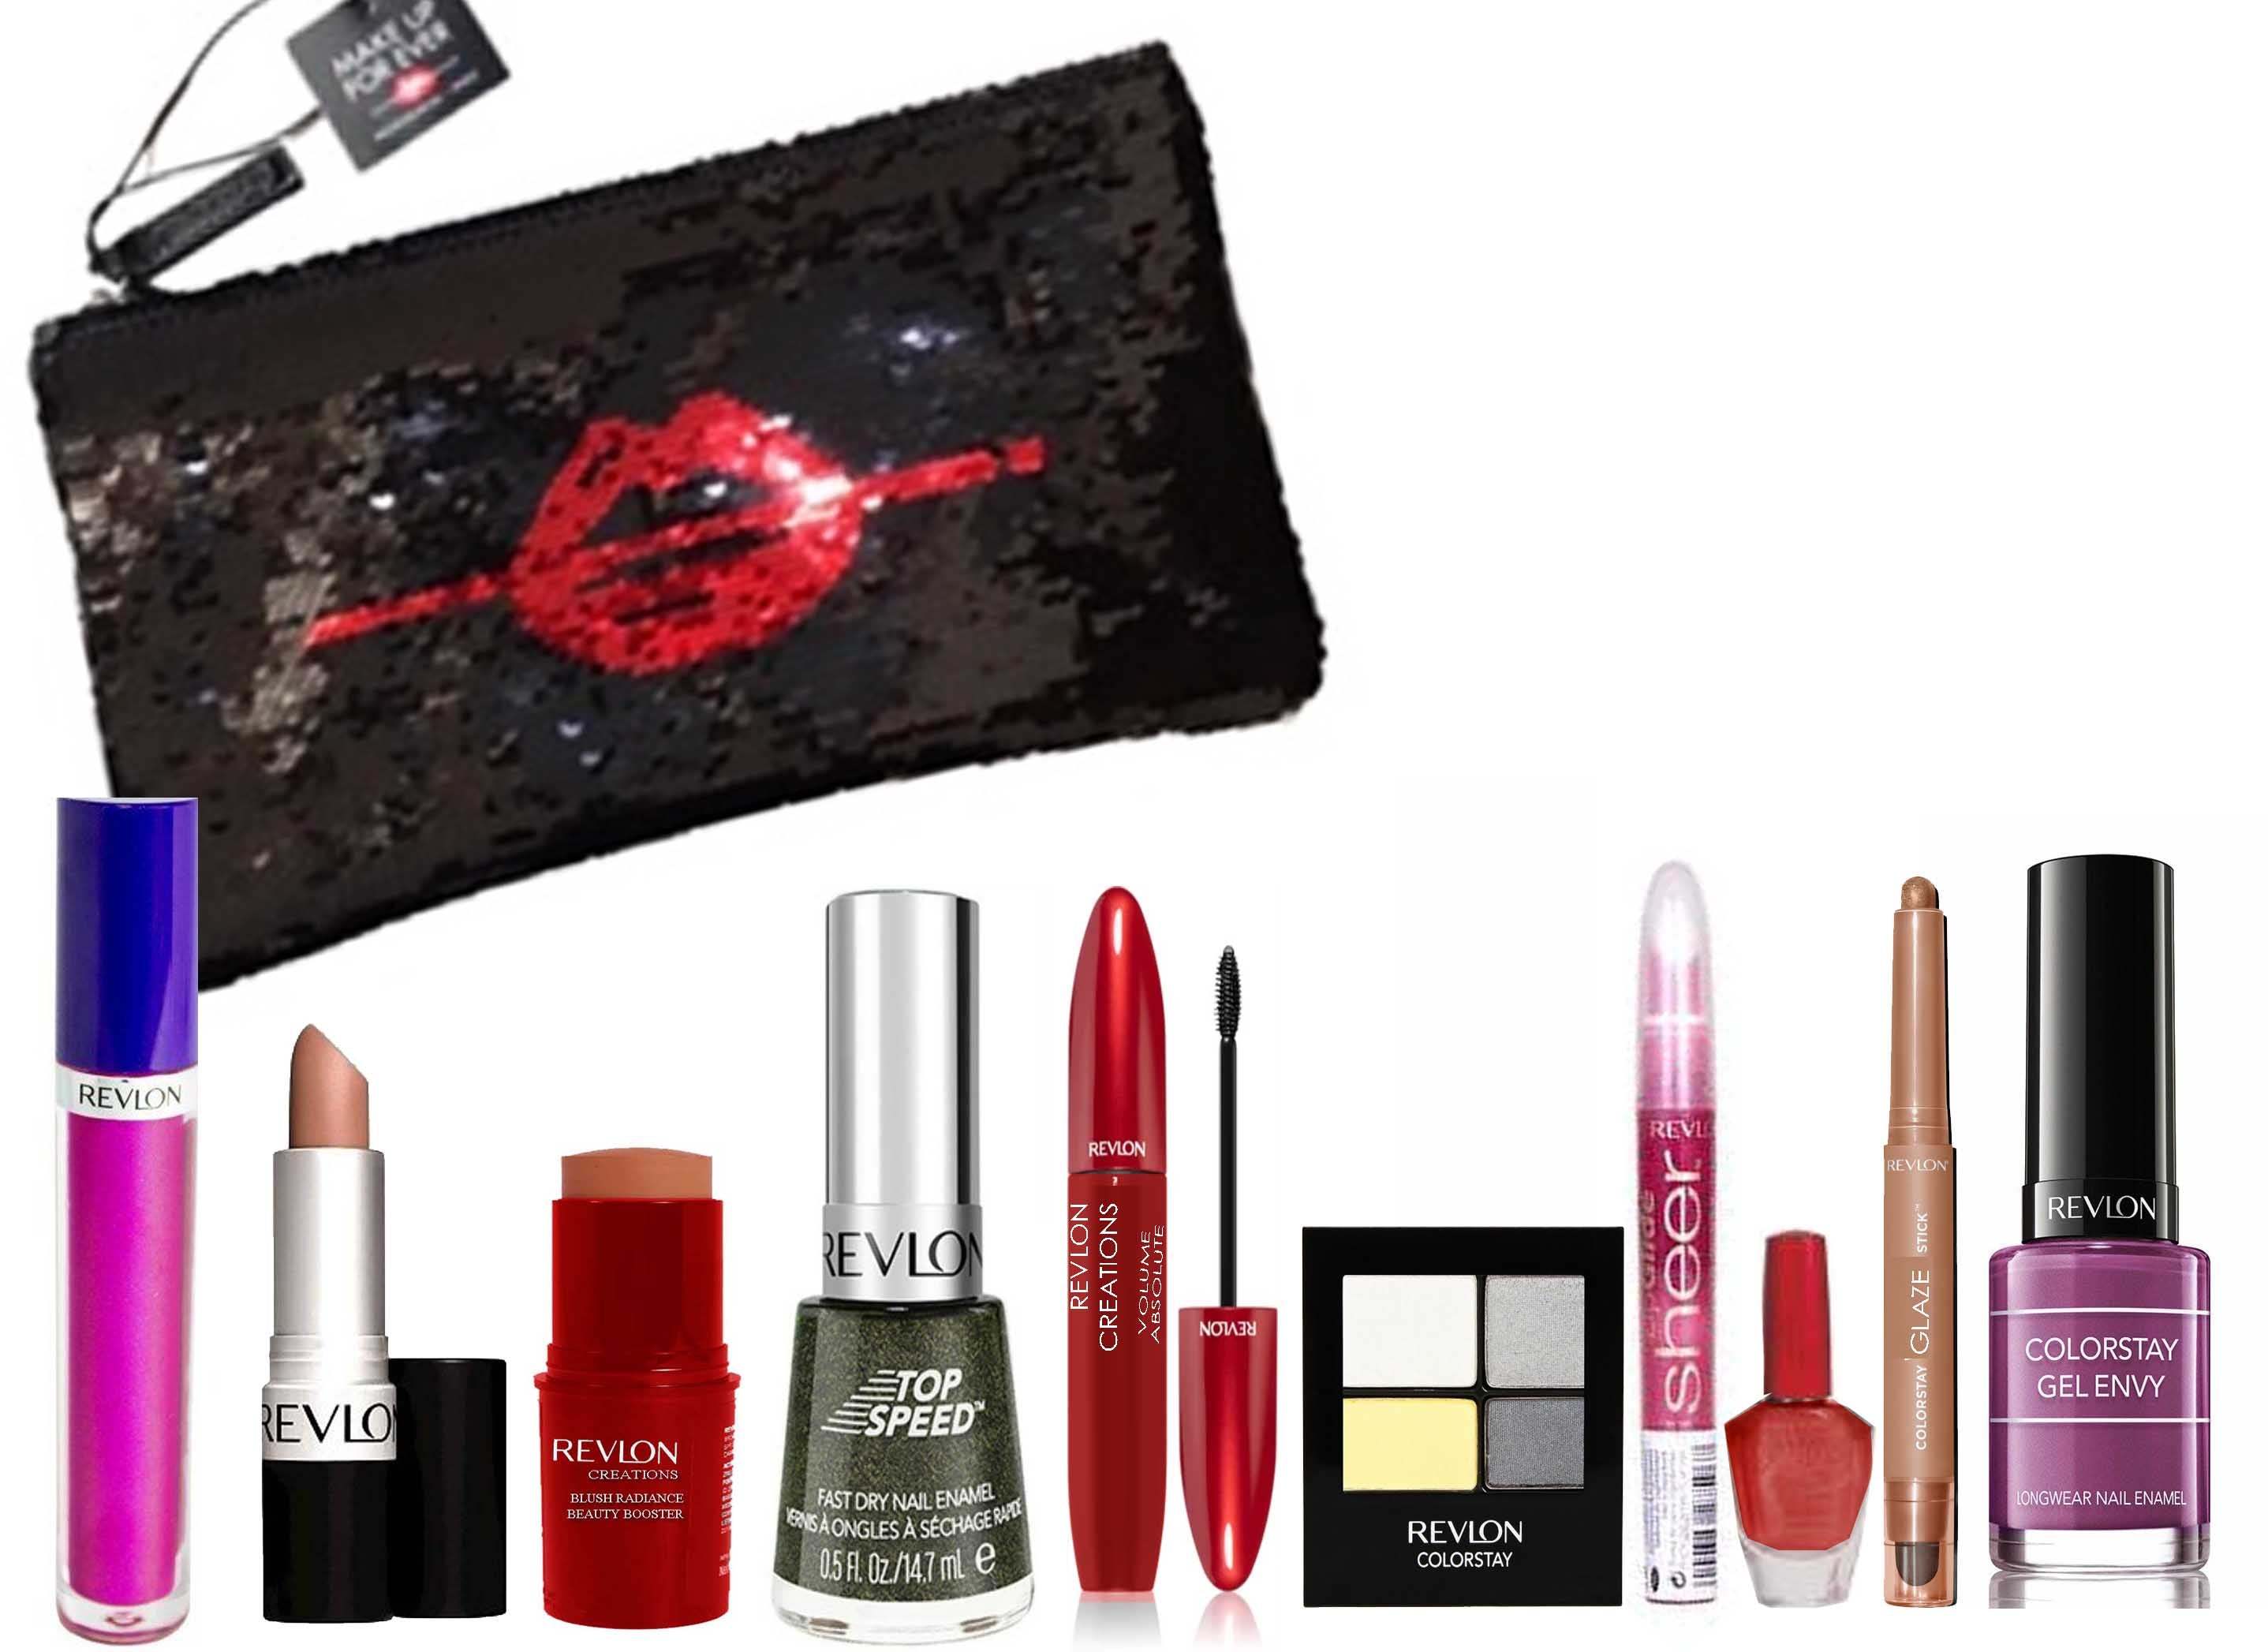 Revlon 10pc Colorstay Lip & Eye Makeup Set & Bag